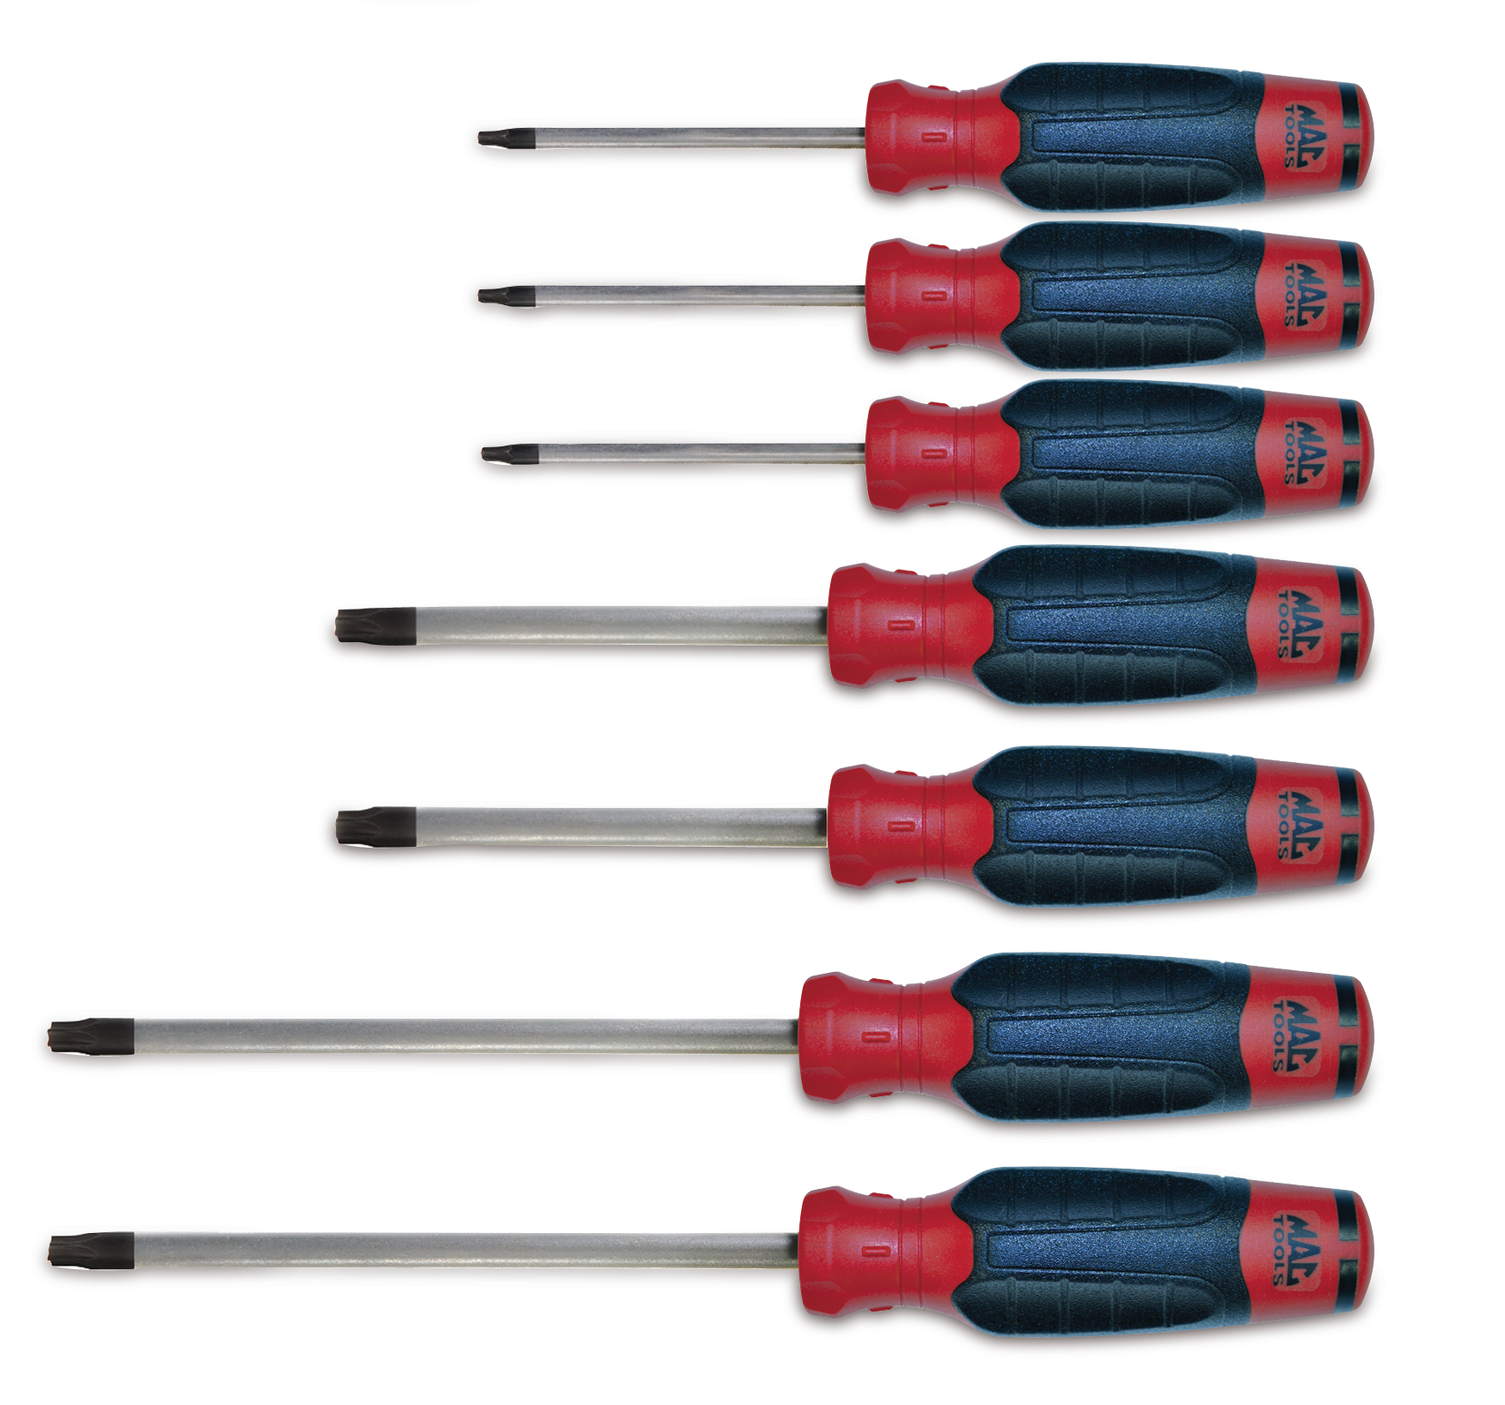 mac tools screwdriver set for sale